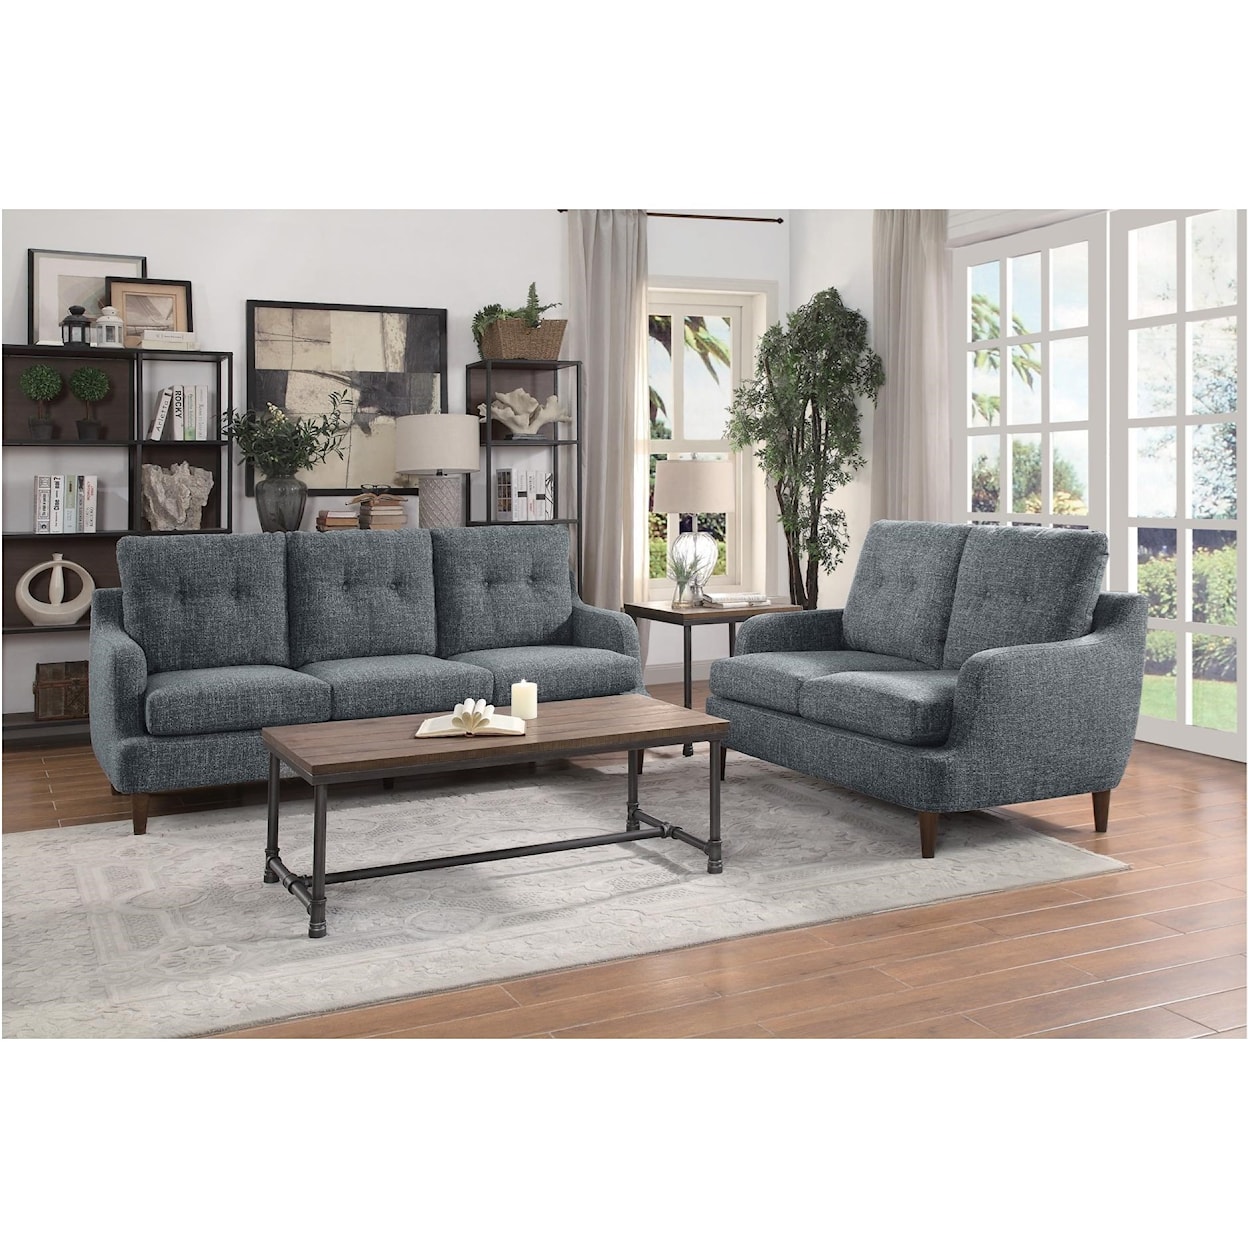 Homelegance Furniture Cagle Stationary Living Room Group